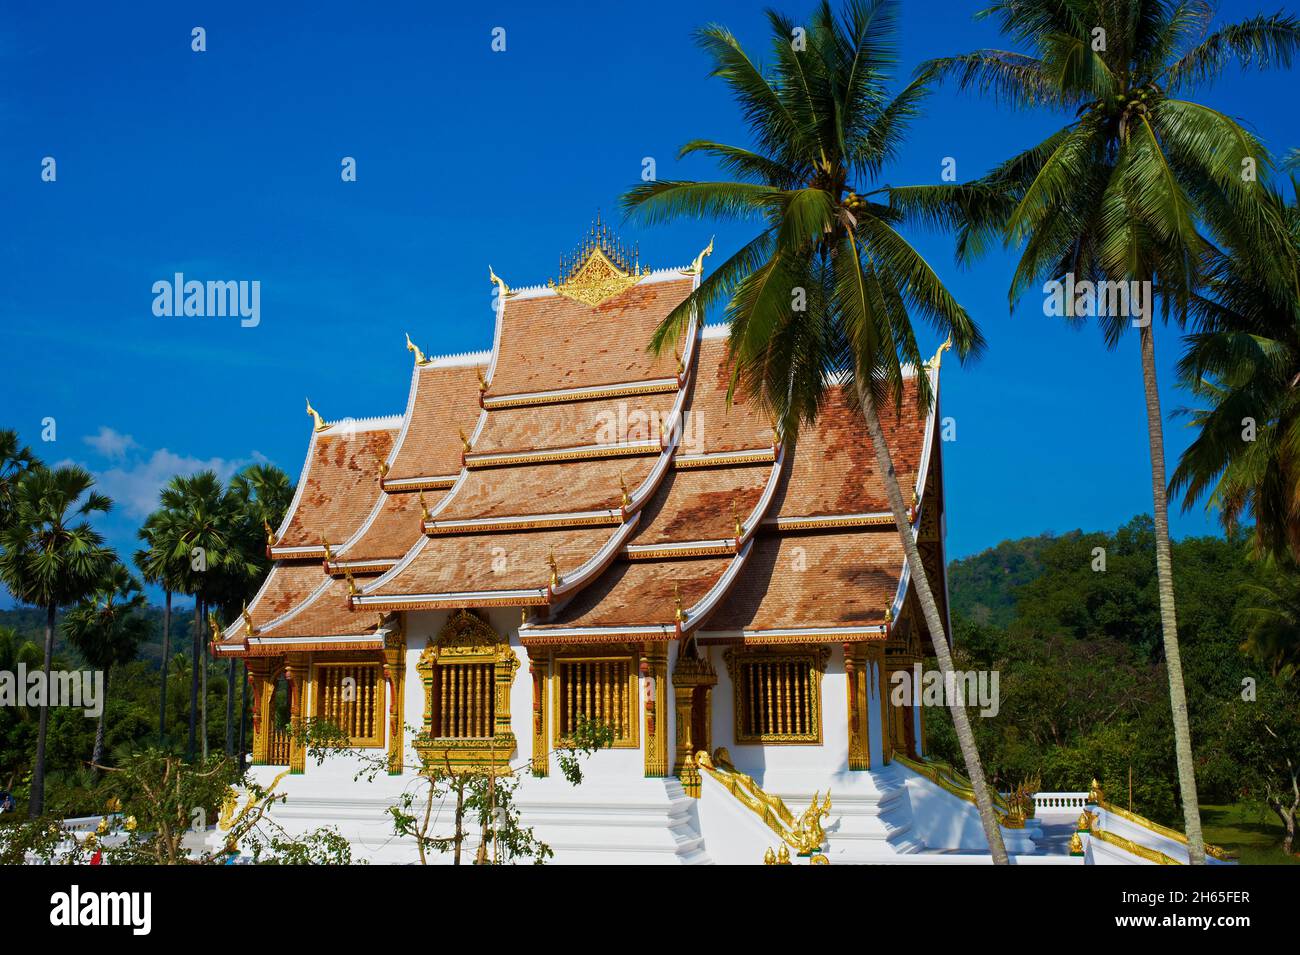 Laos, Provinz Luang Prabang, ville de Luang Prabang, Patrimoine mondial de l'UNESCO depuis 1995, musee du Palais Royal (Ho Kham), le Temple dore W Stockfoto